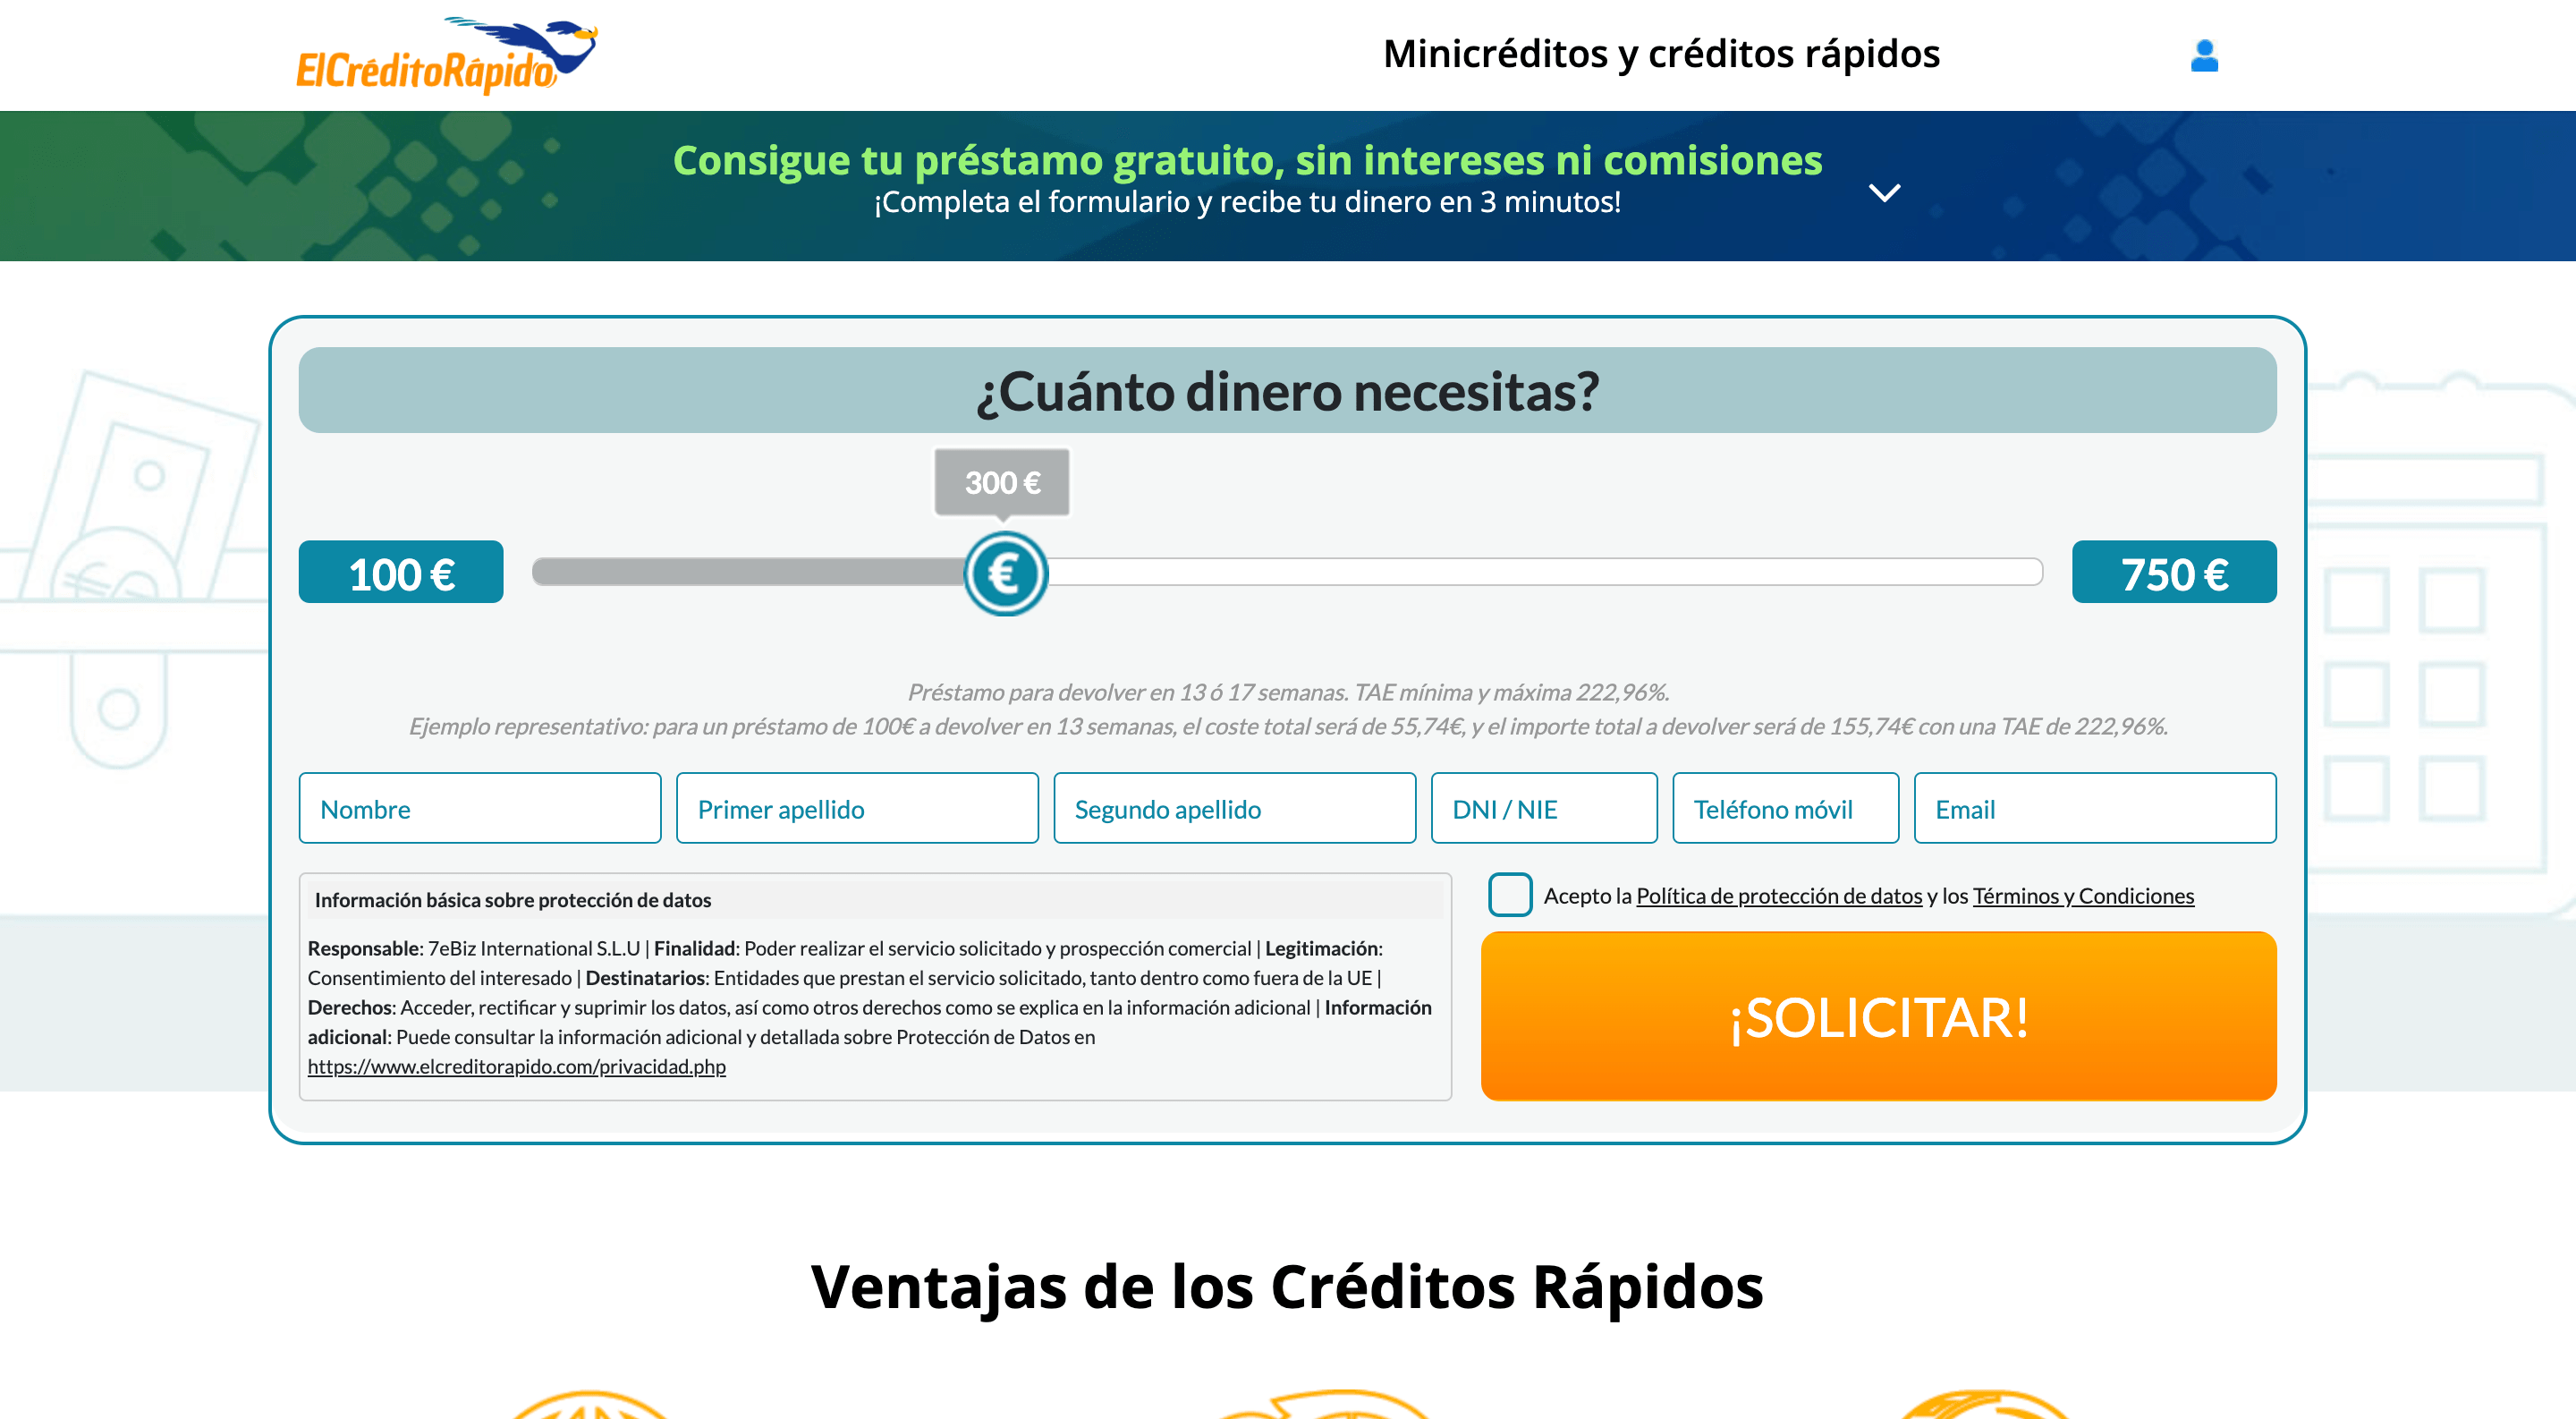 ElCreditoRapido - préstamo online de hasta 750€